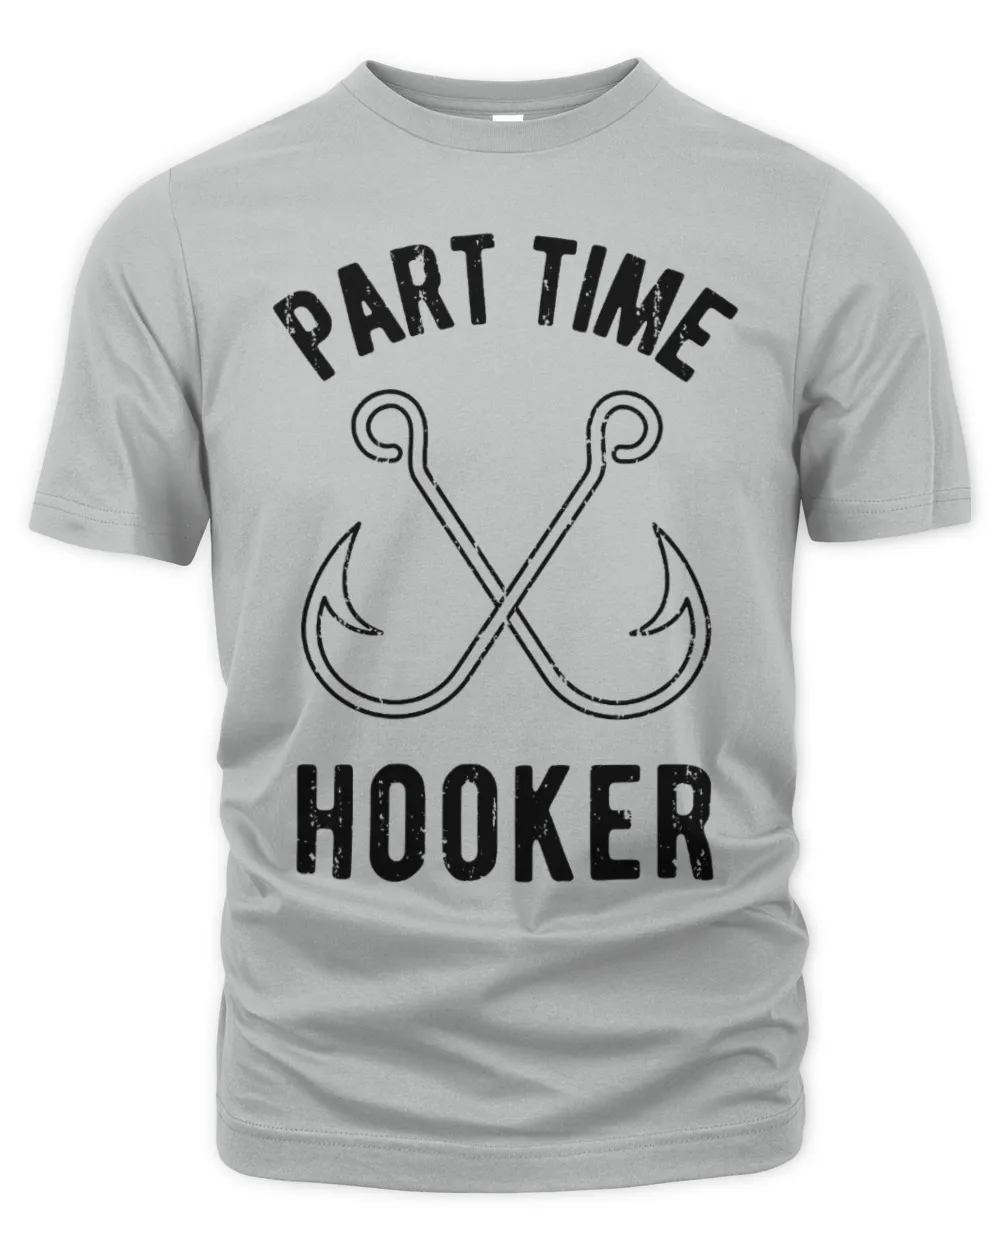 Fishing Gear, Fishing Dad Shirt, Part Time Hooker, Rude Shirt Mens, Funny Fishing Shirt, Bachelor T Shirt, Mens Funny T Shirt